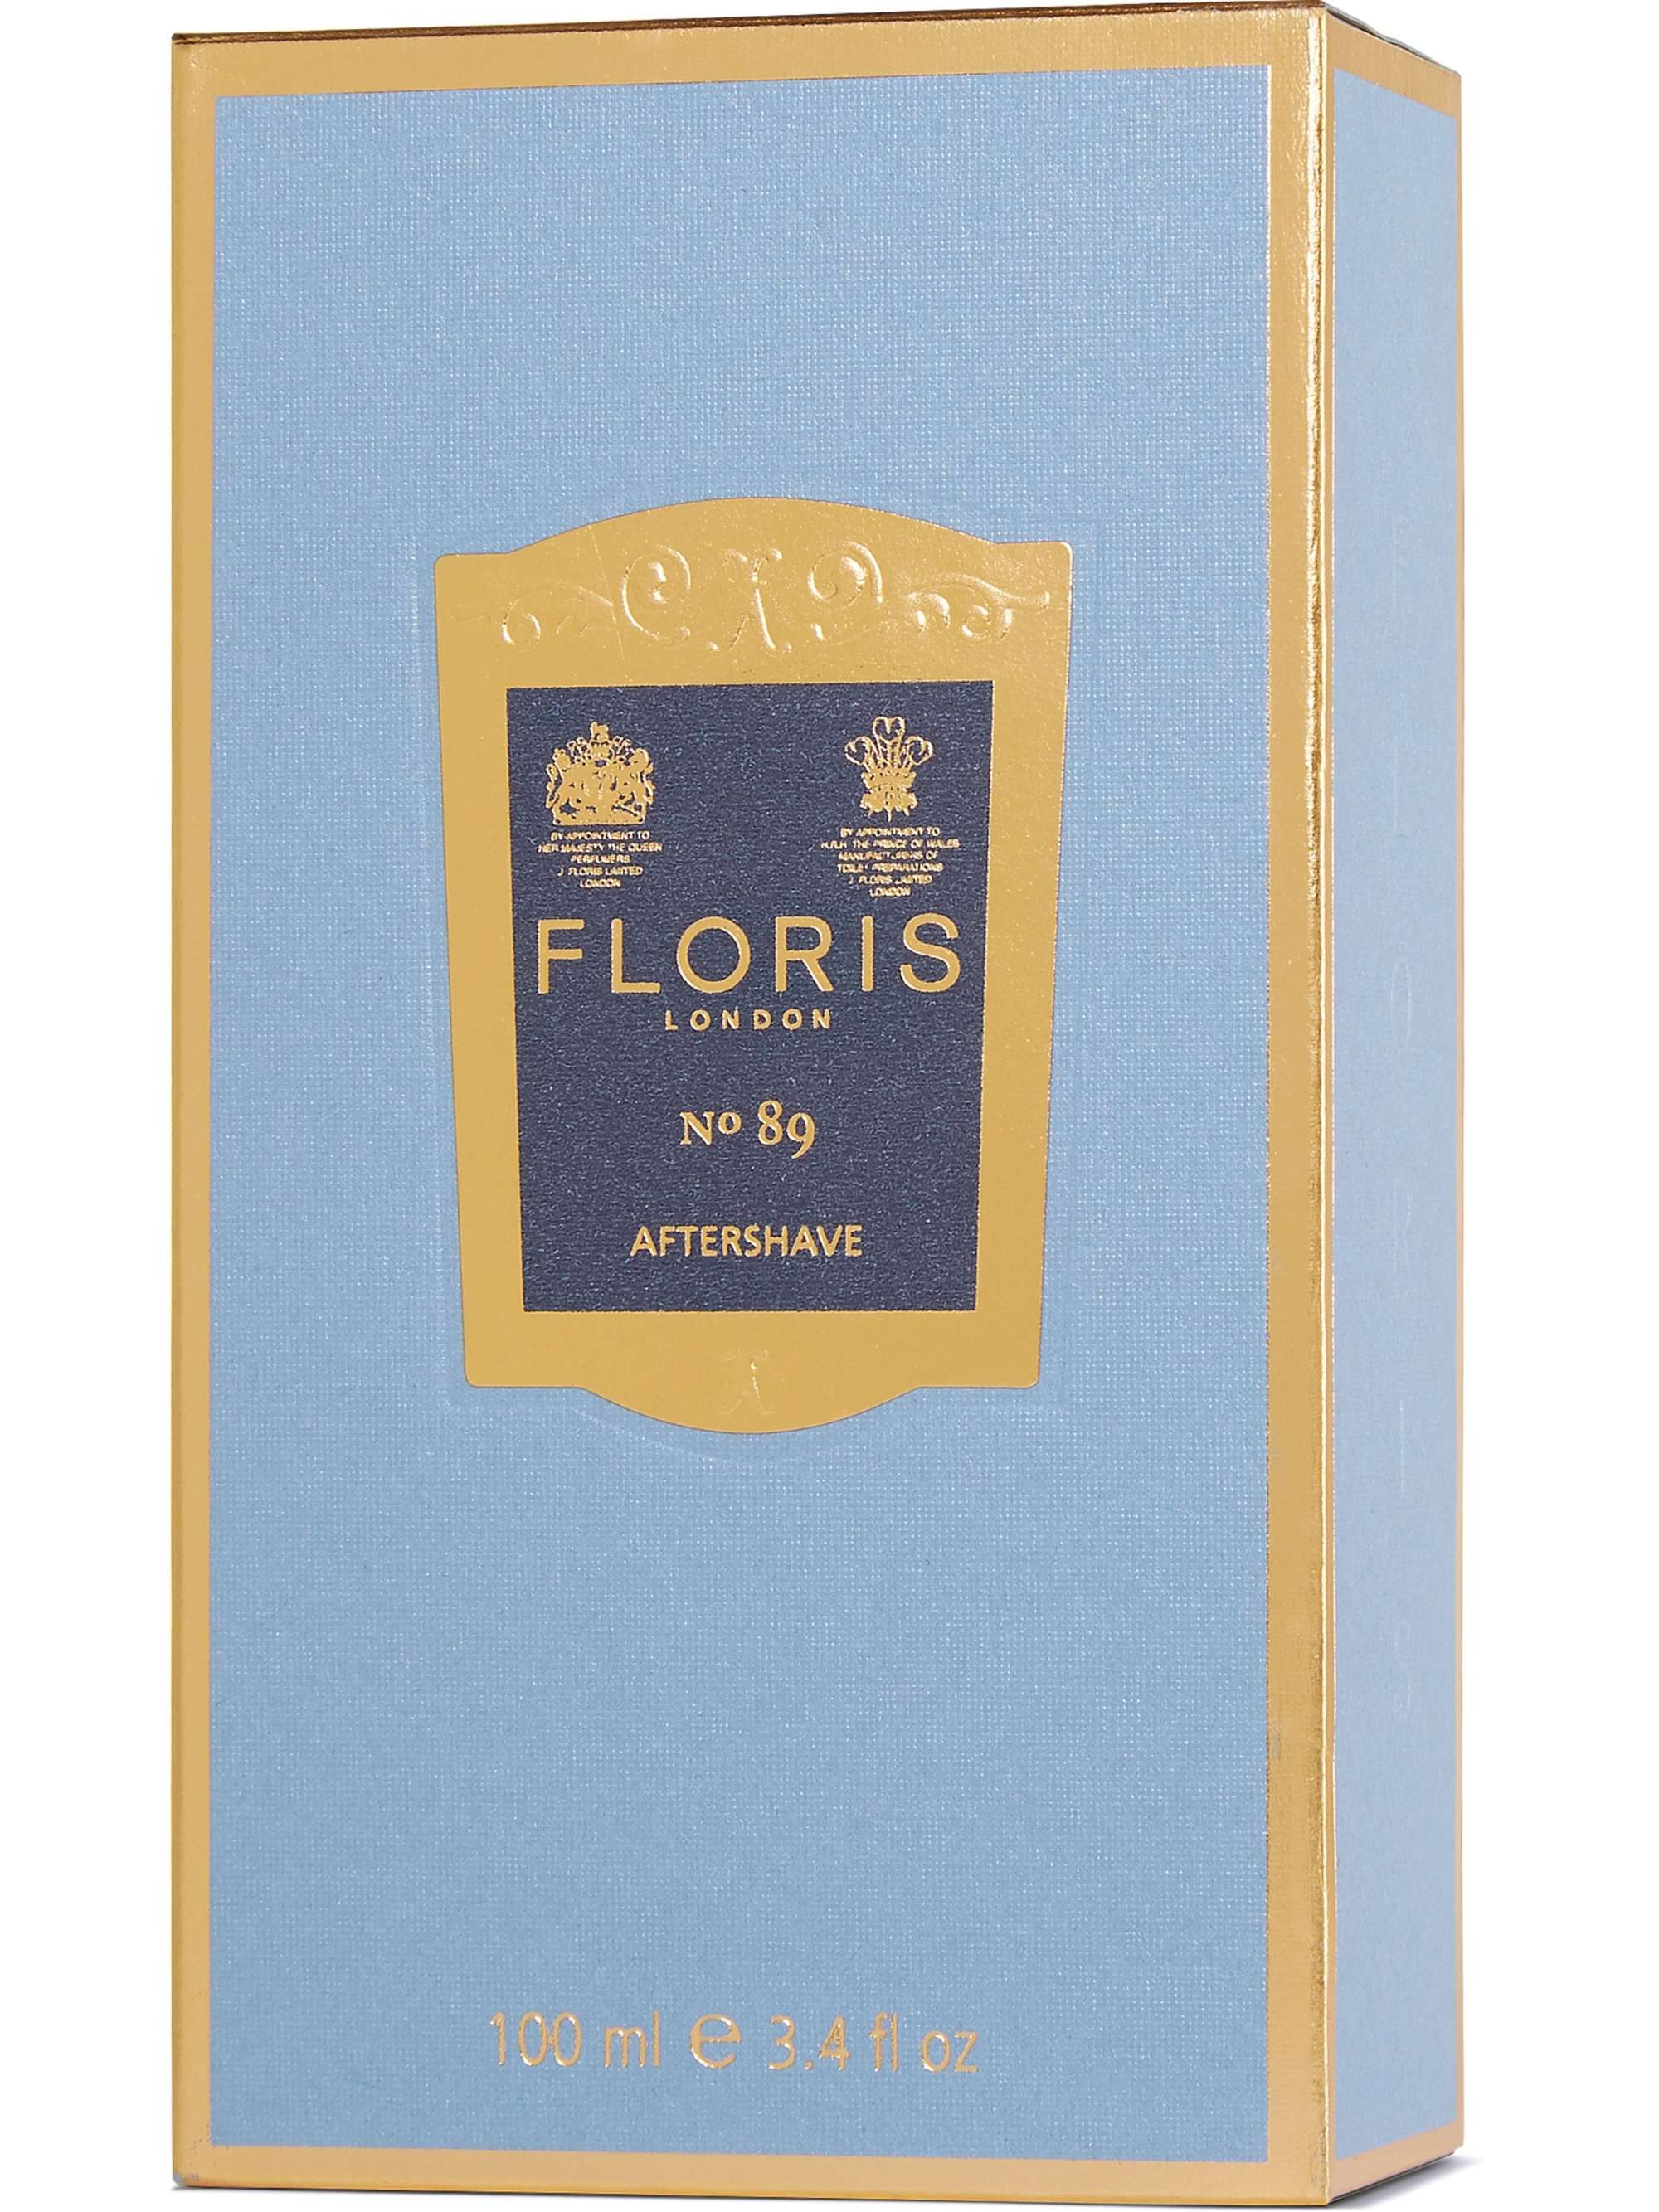 Floris London No. 89 Aftershave, 100ml